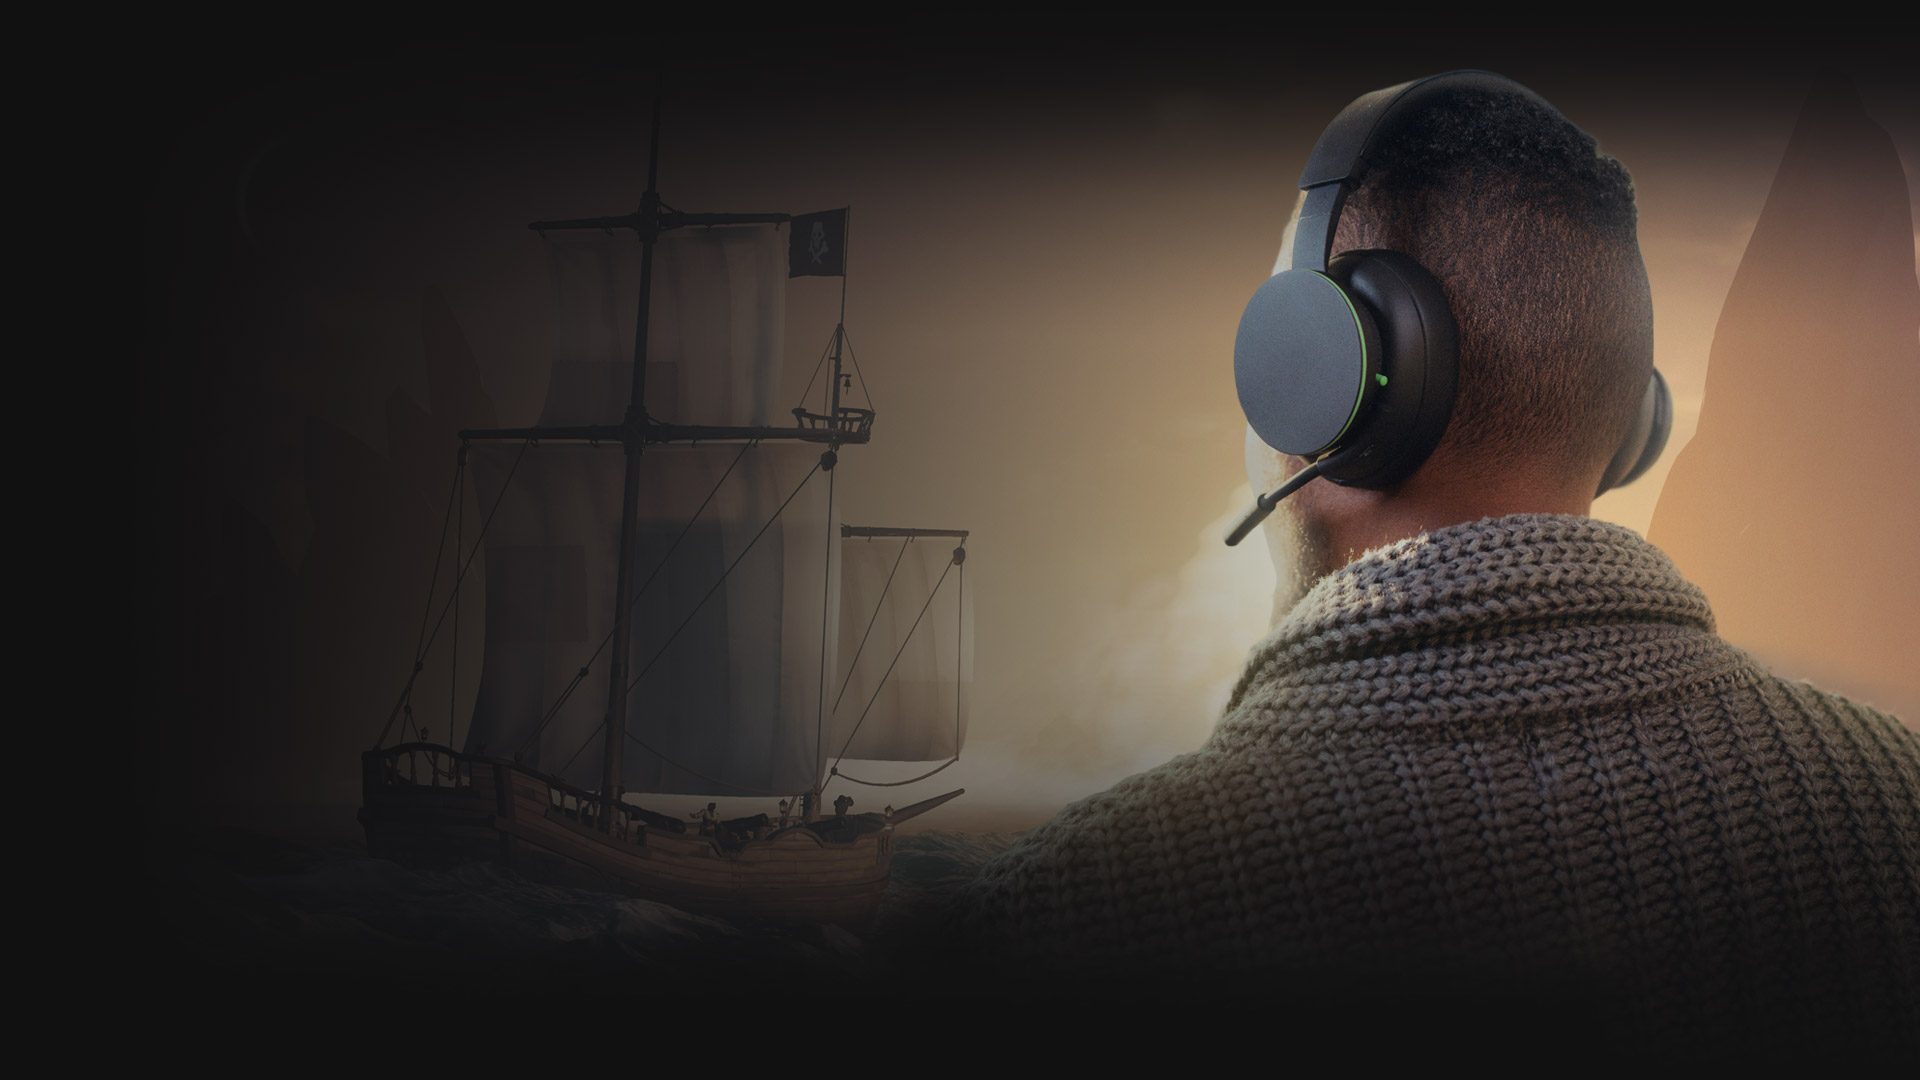 Un homme regarde le vaste monde de Sea of Thieves tout en portant le casque sans fil Xbox qui lui permet de communiquer avec ses coéquipiers.